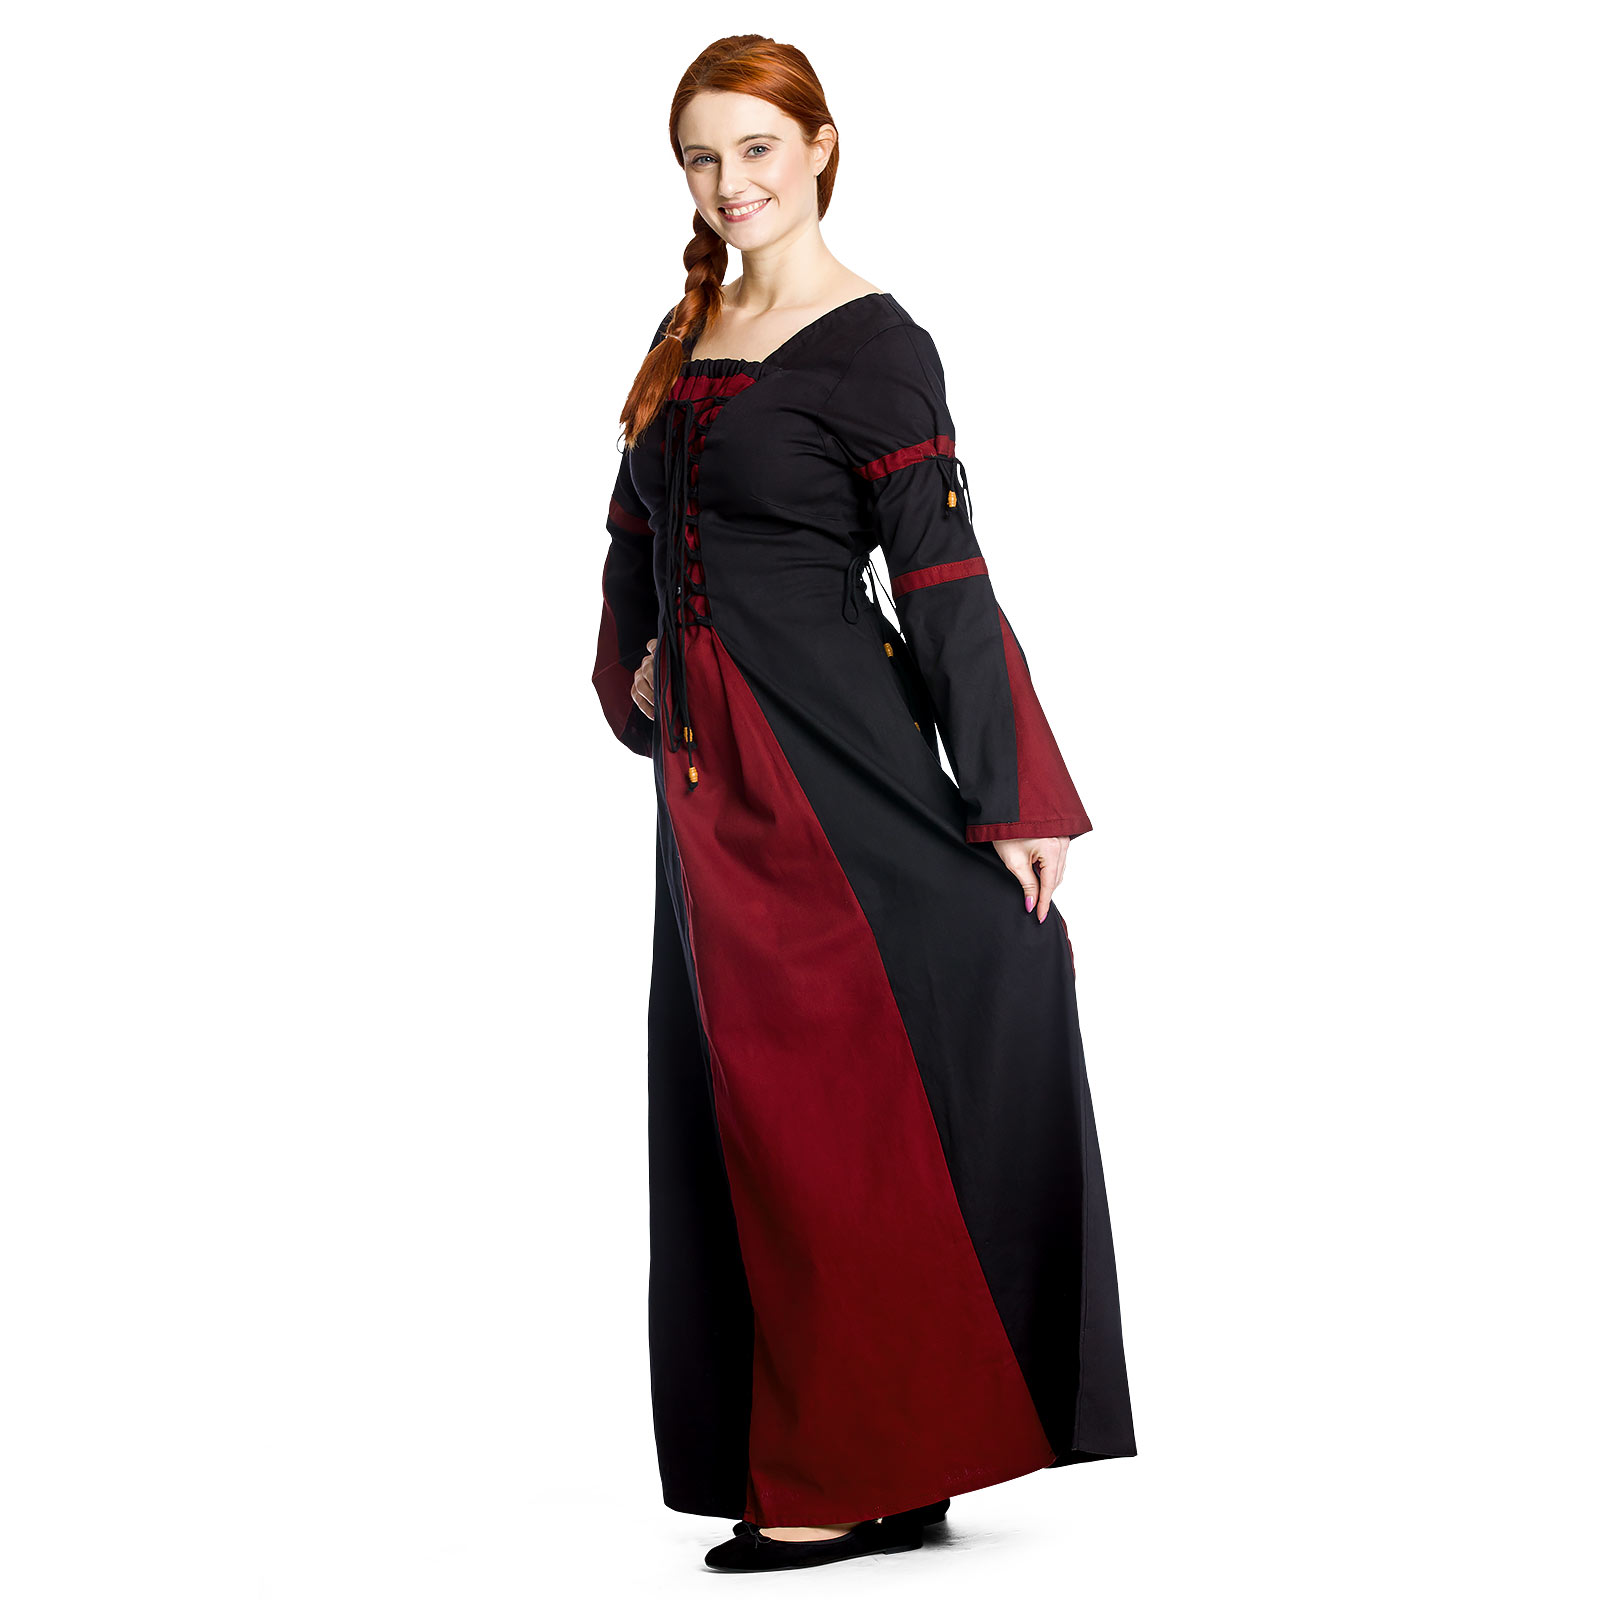 Elisa - Mittelalterkleid rot-schwarz